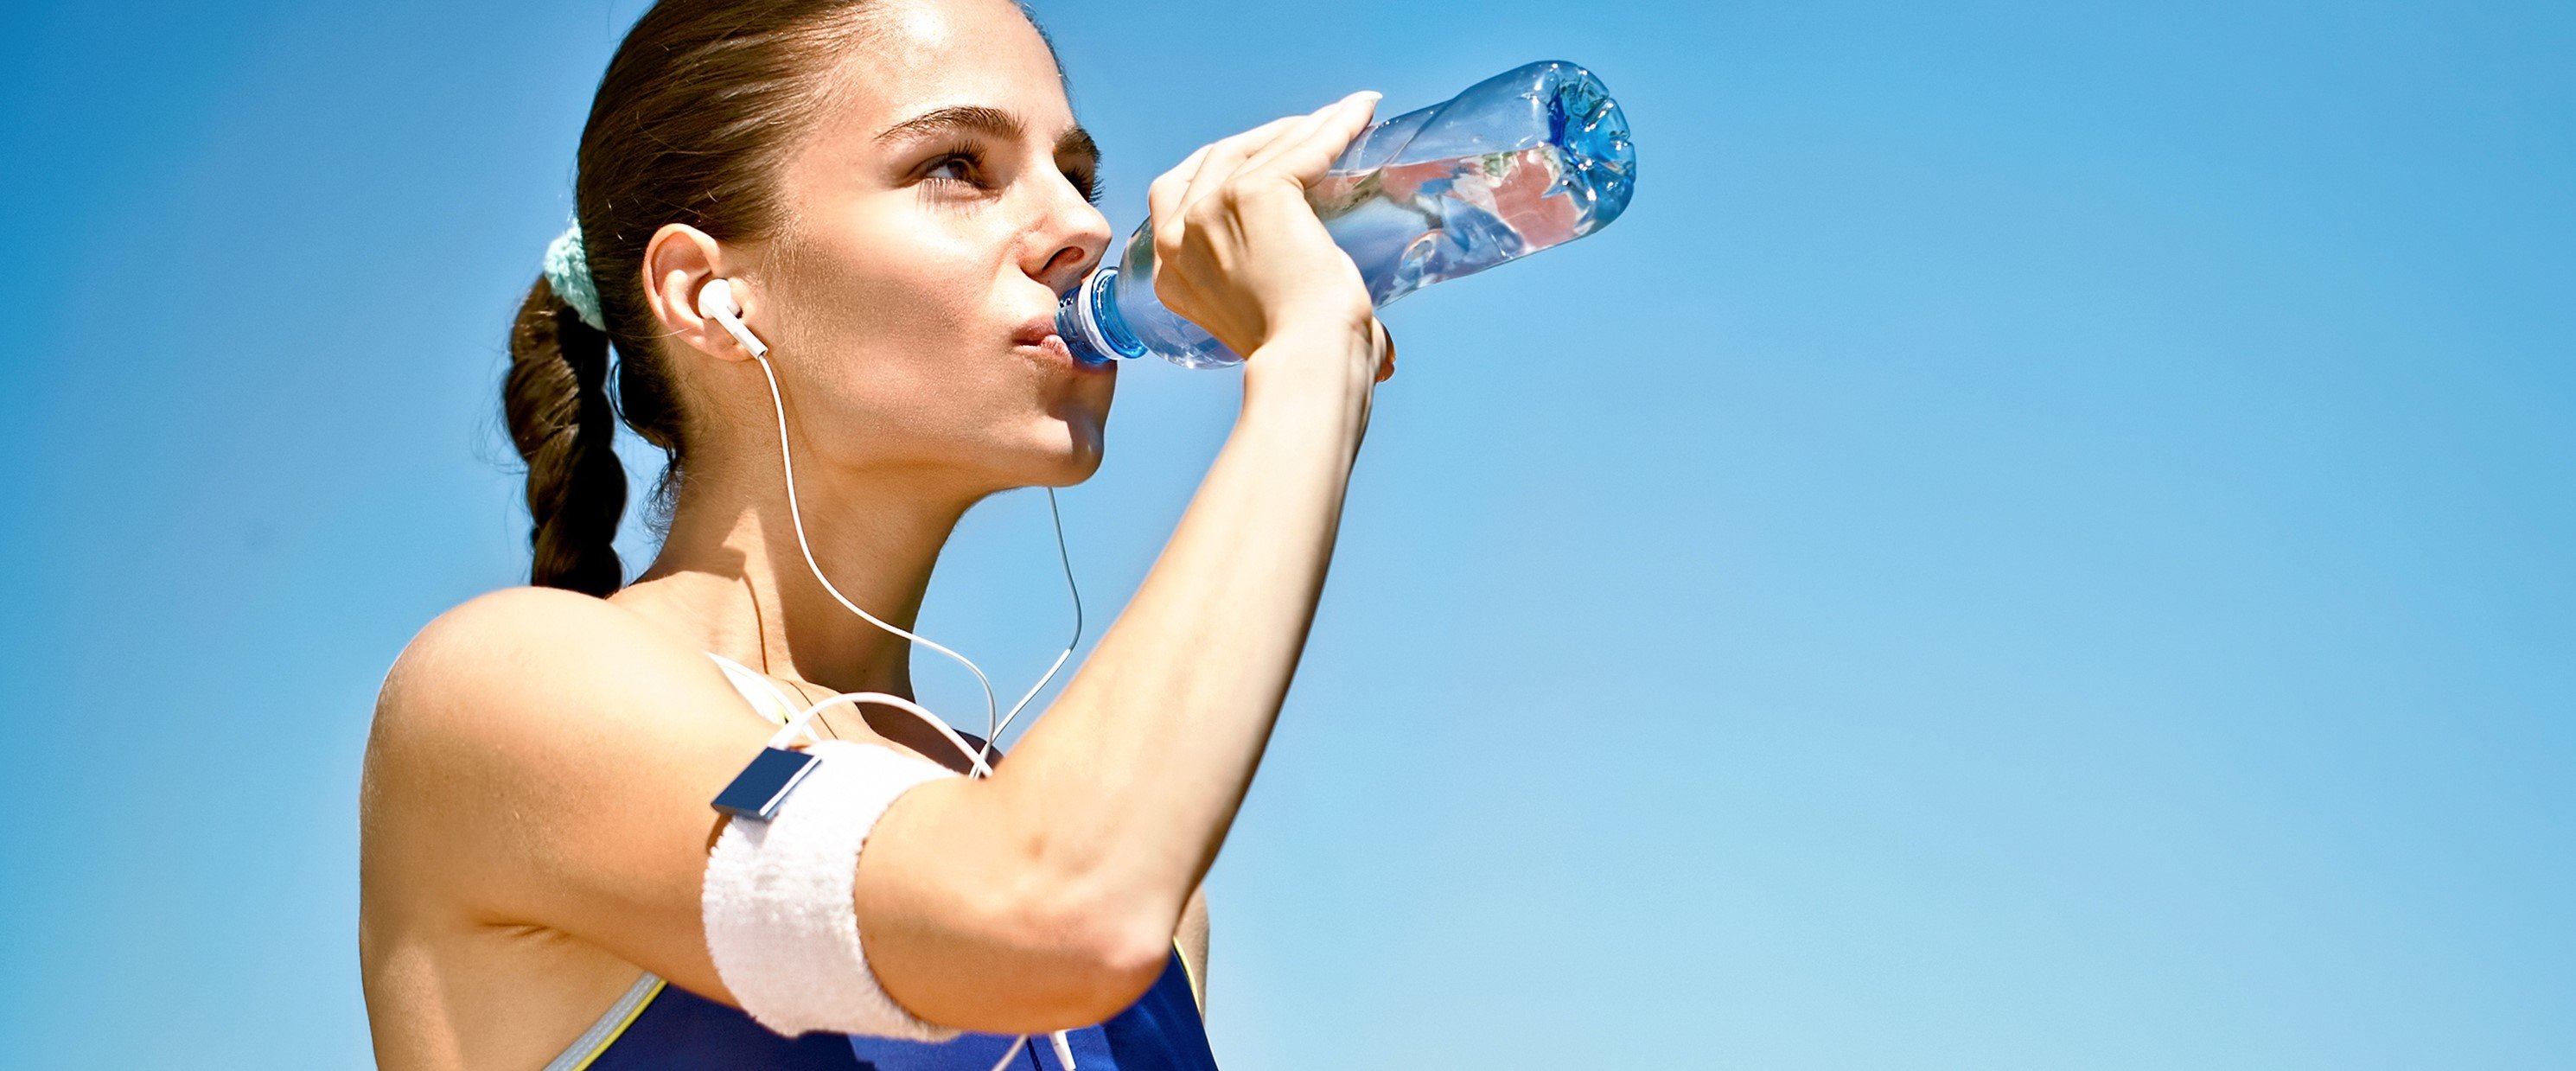 Die körpereigene Klimaanlage halten Sportler durch ausreichendes Trinken im Gang. Quelle: WetterOnline